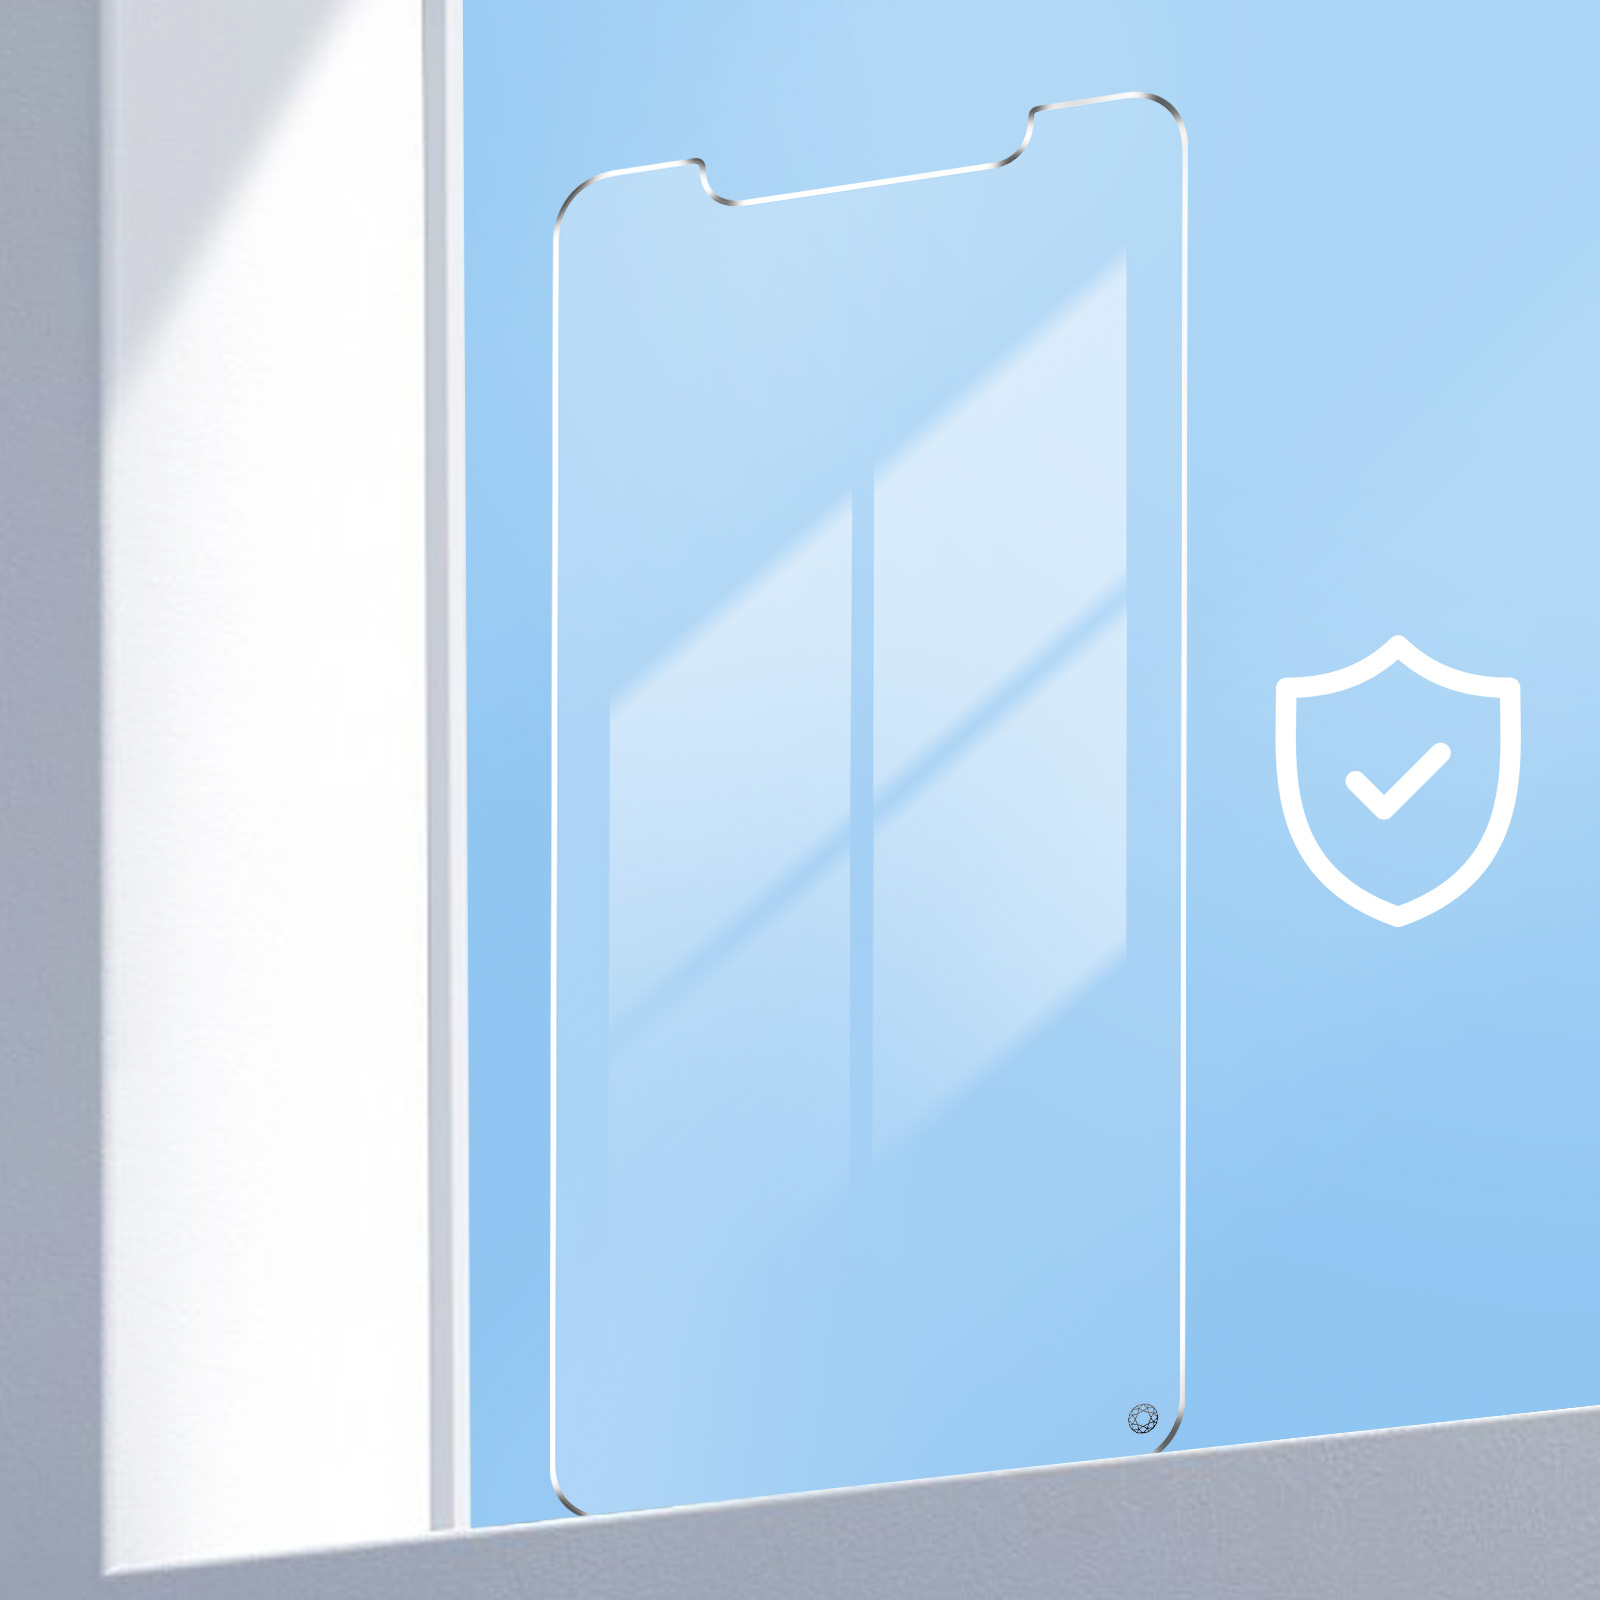 Protège-écran ForceGlass en verre trempé 9H+ traitement Anti lumière bleue  - Garantie à vie p. Apple iPhone X et XS - Français